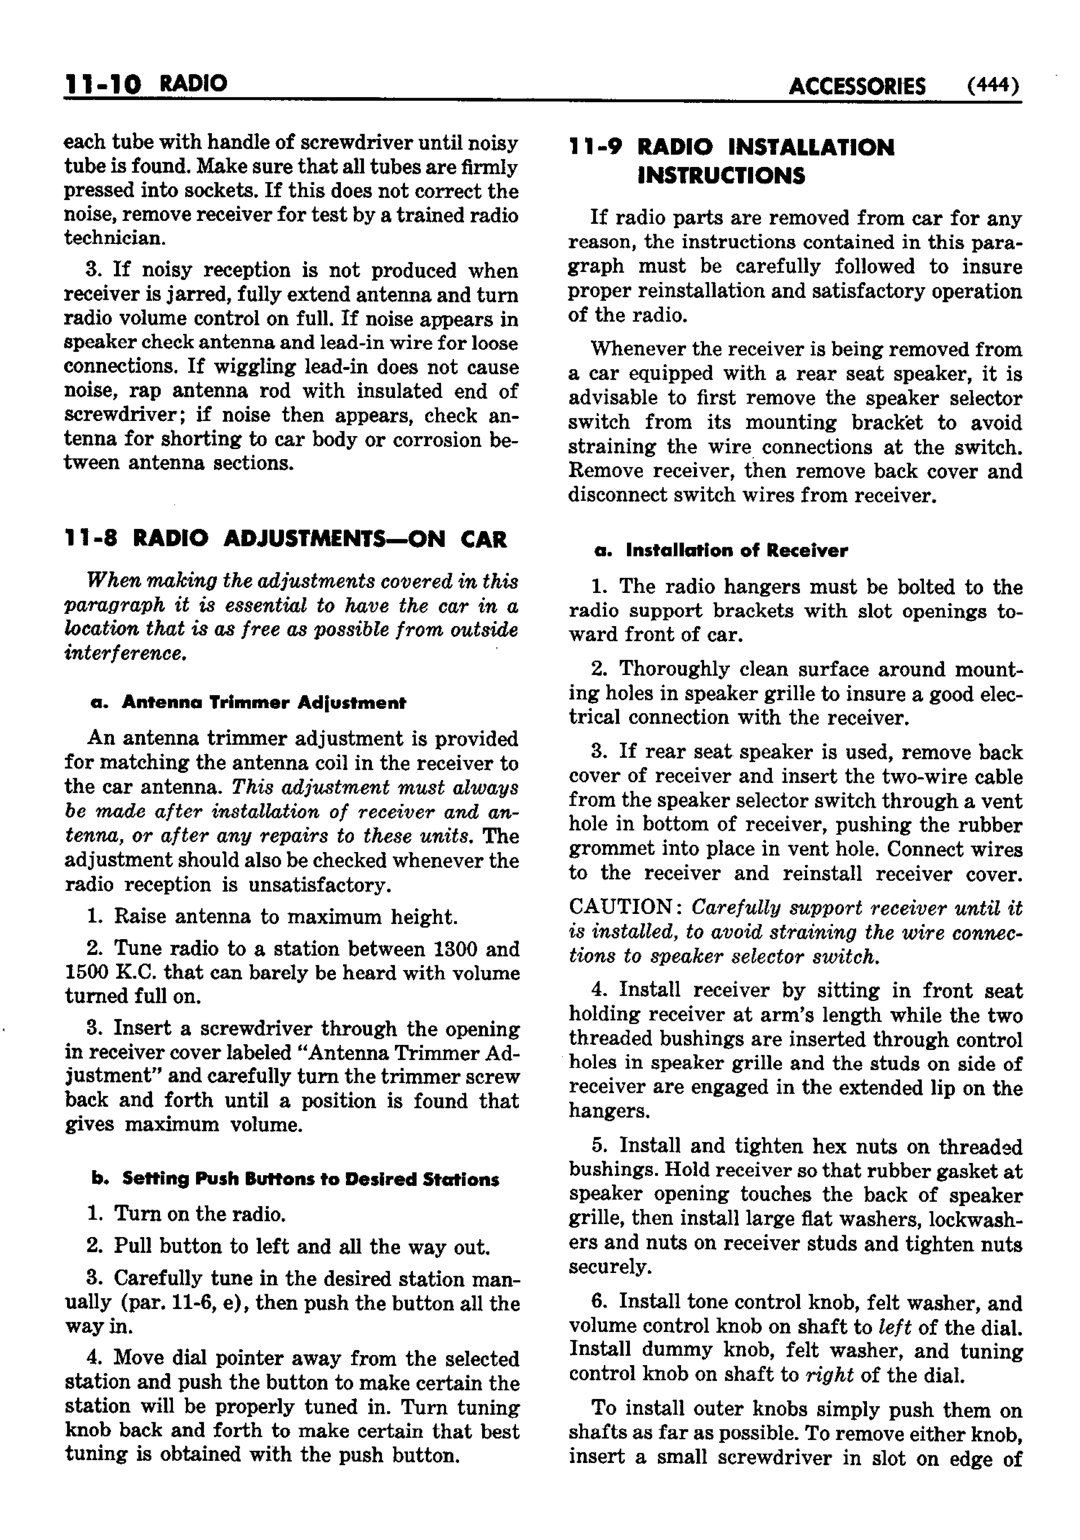 n_12 1952 Buick Shop Manual - Accessories-010-010.jpg